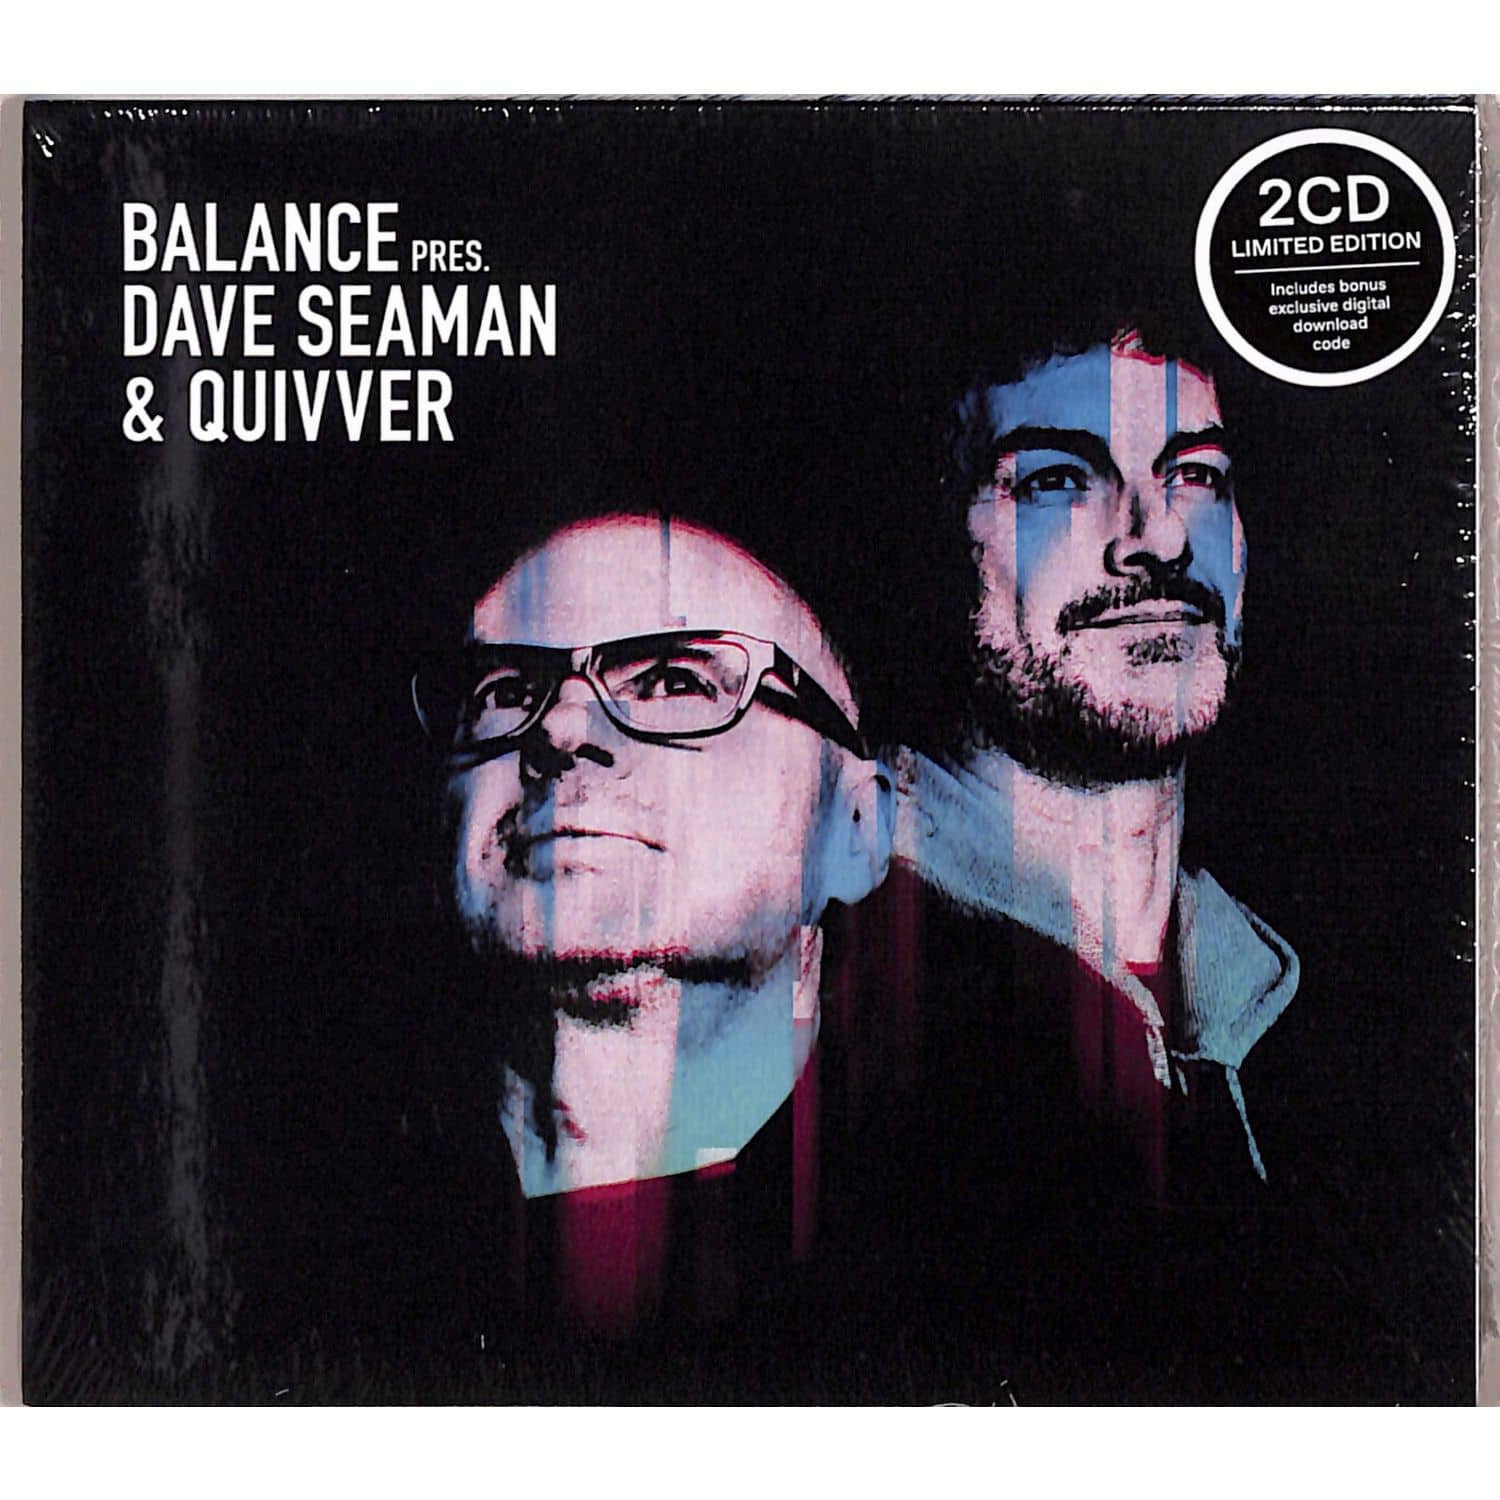 Dave Seaman & Quivver - BALANCE PRESENTS DAVE SEAMAN & QUIVVER 